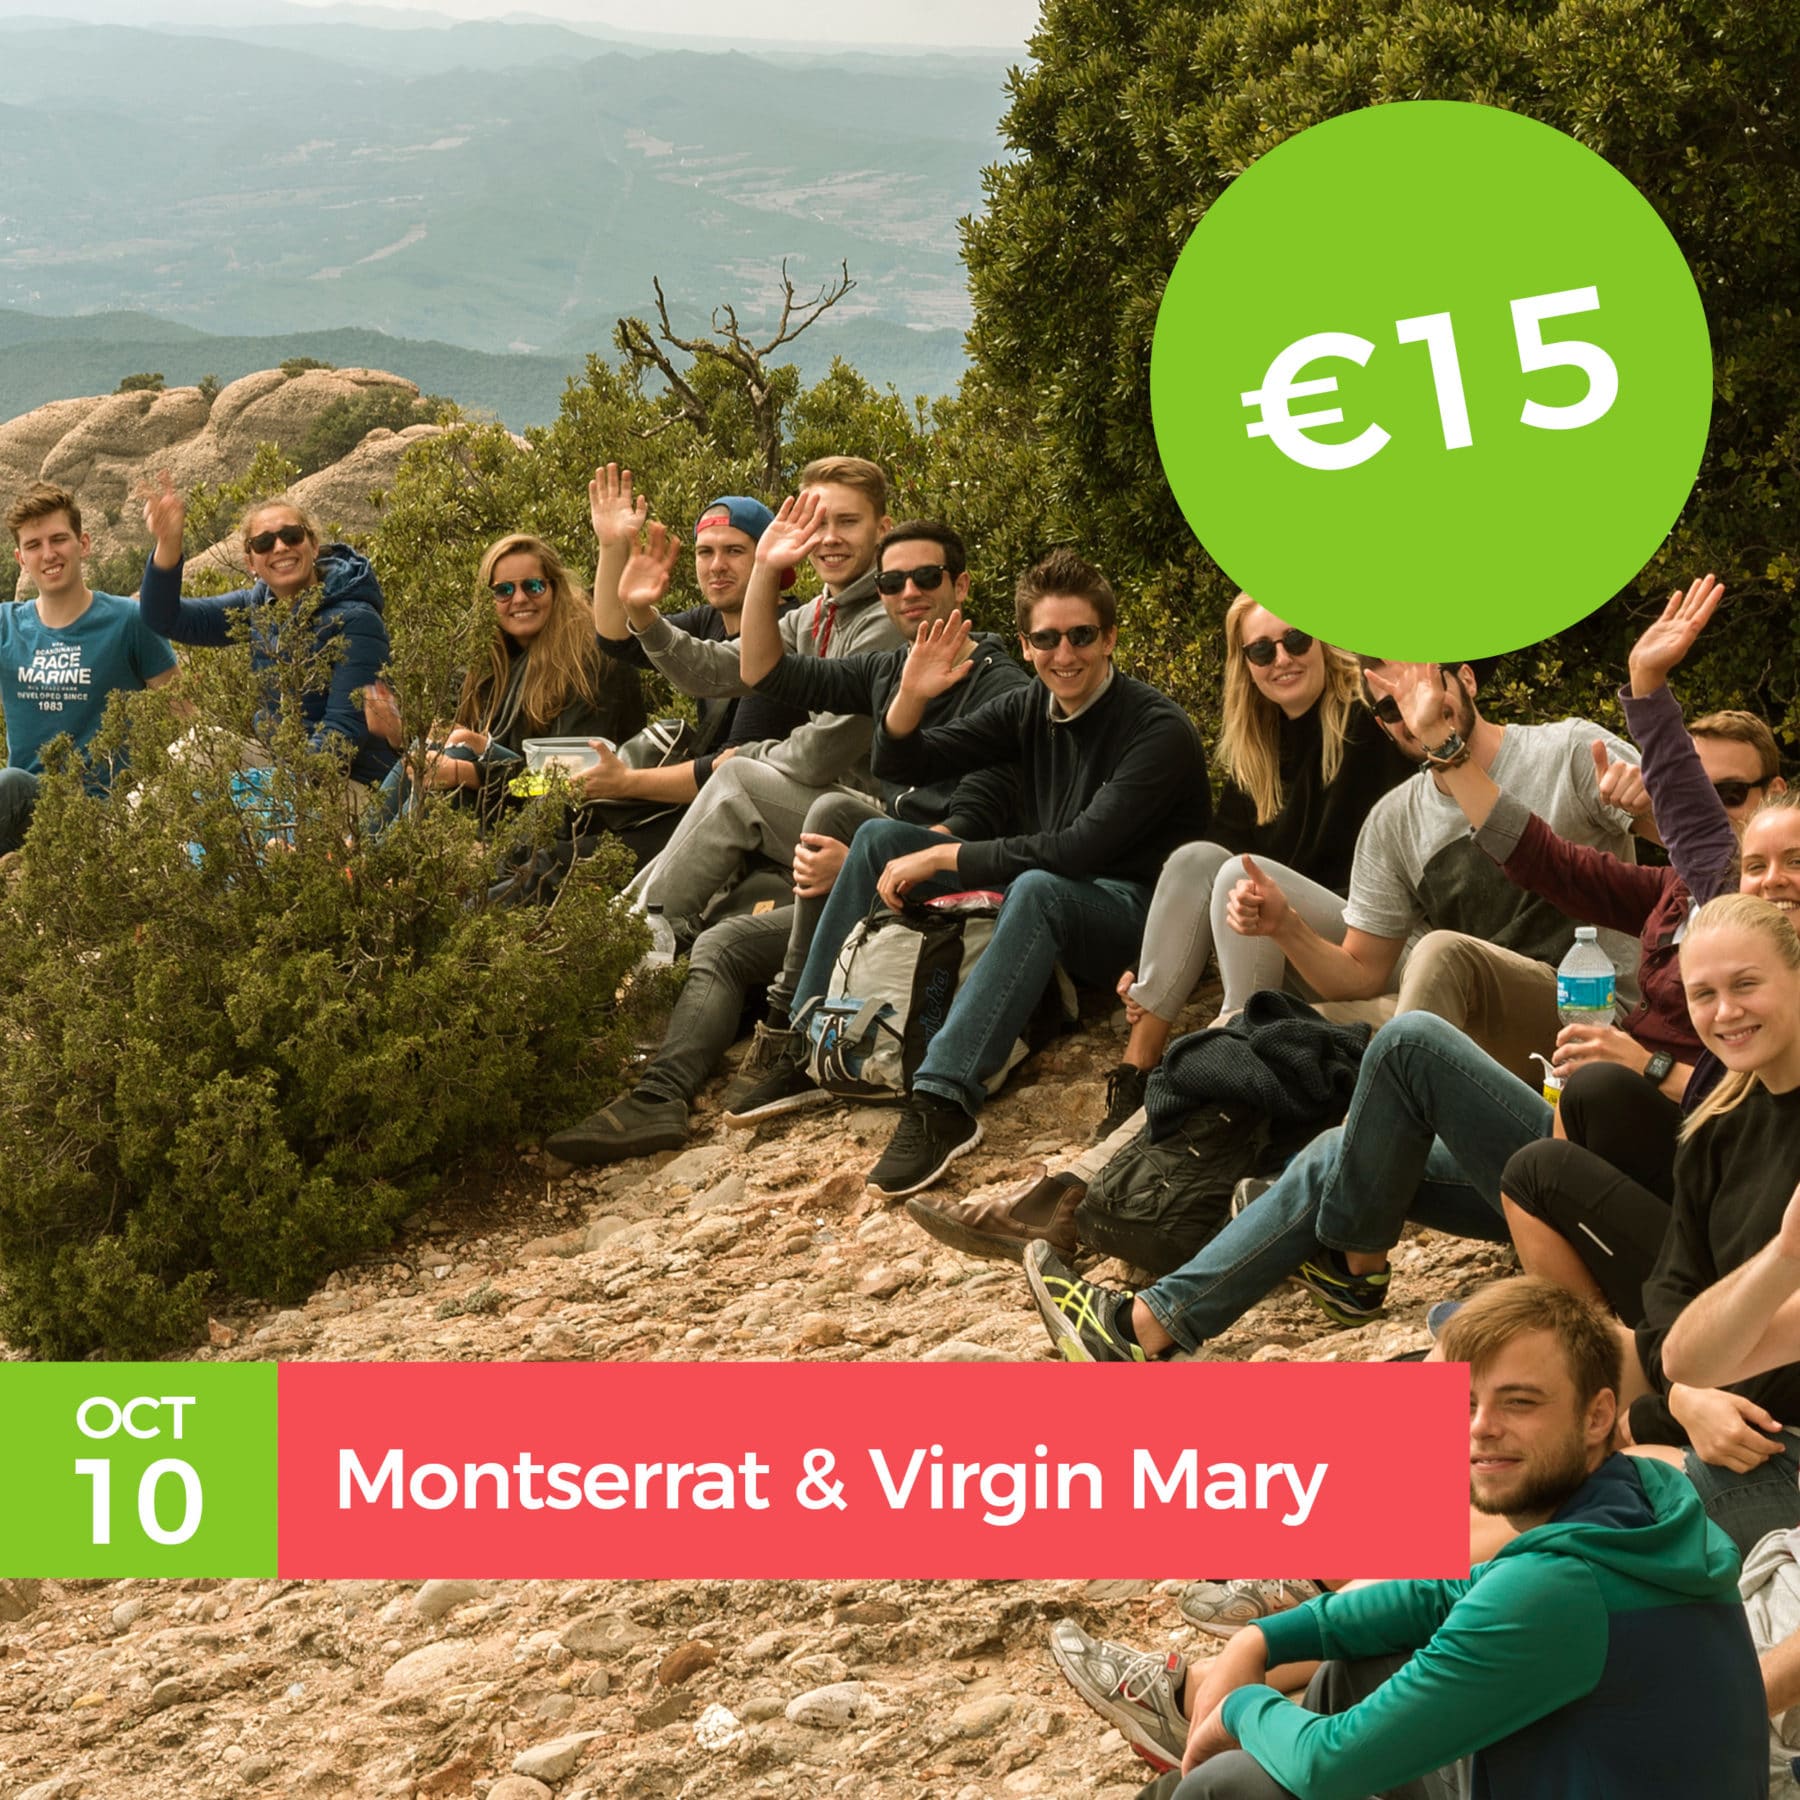 5 wonderful things to see in Montserrat